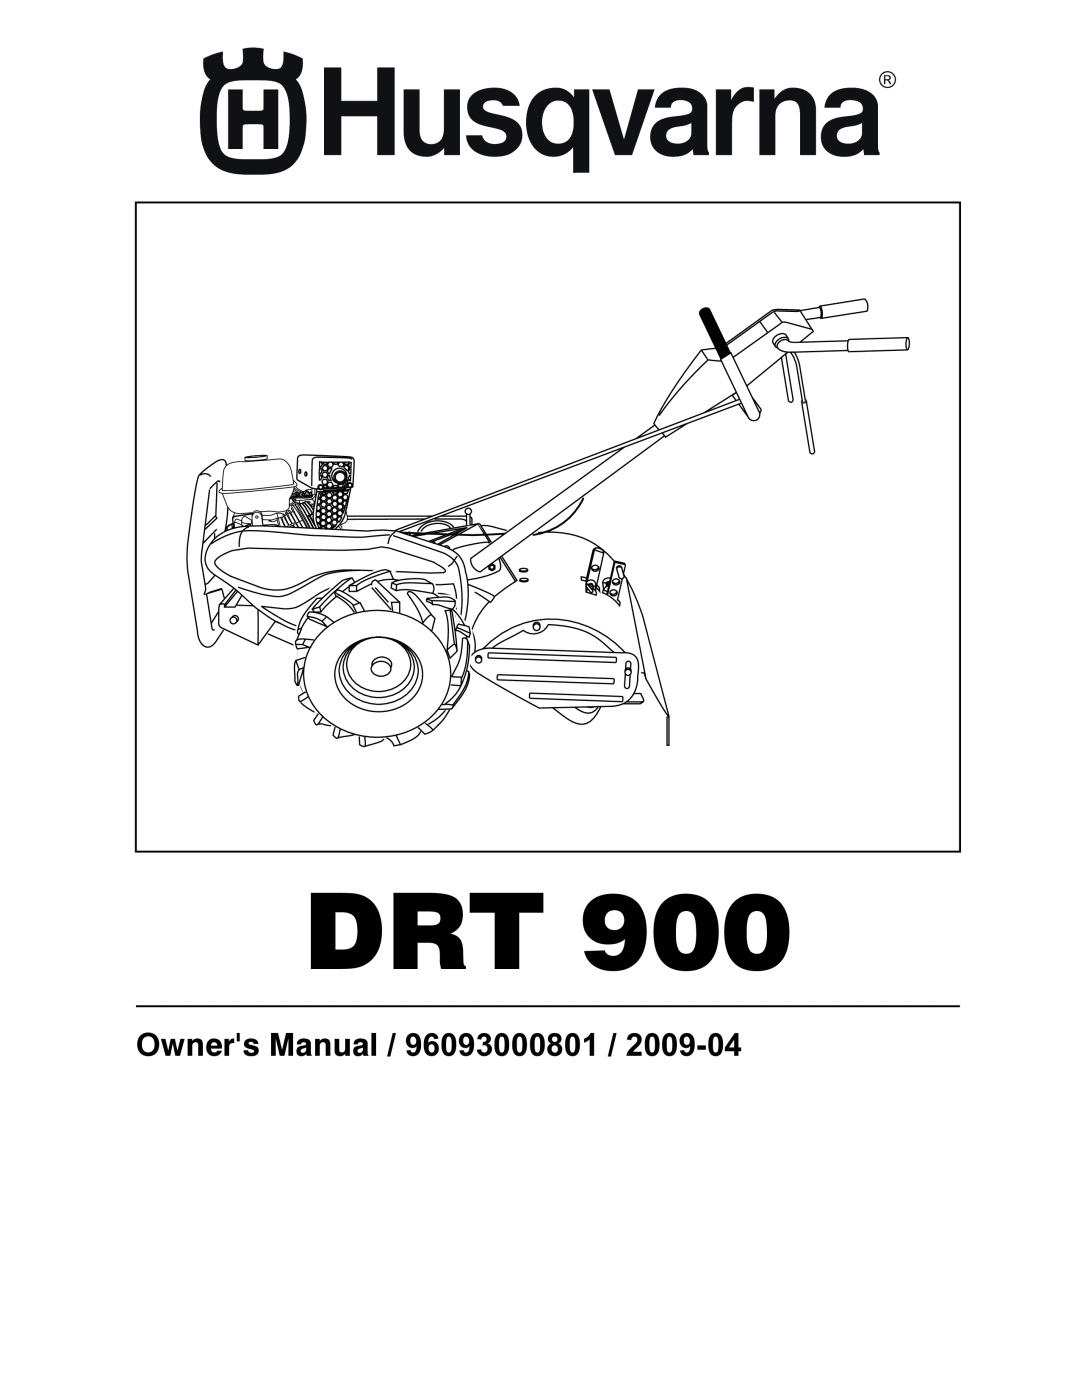 Husqvarna DRT 900 owner manual Owners Manual / 96093000801 